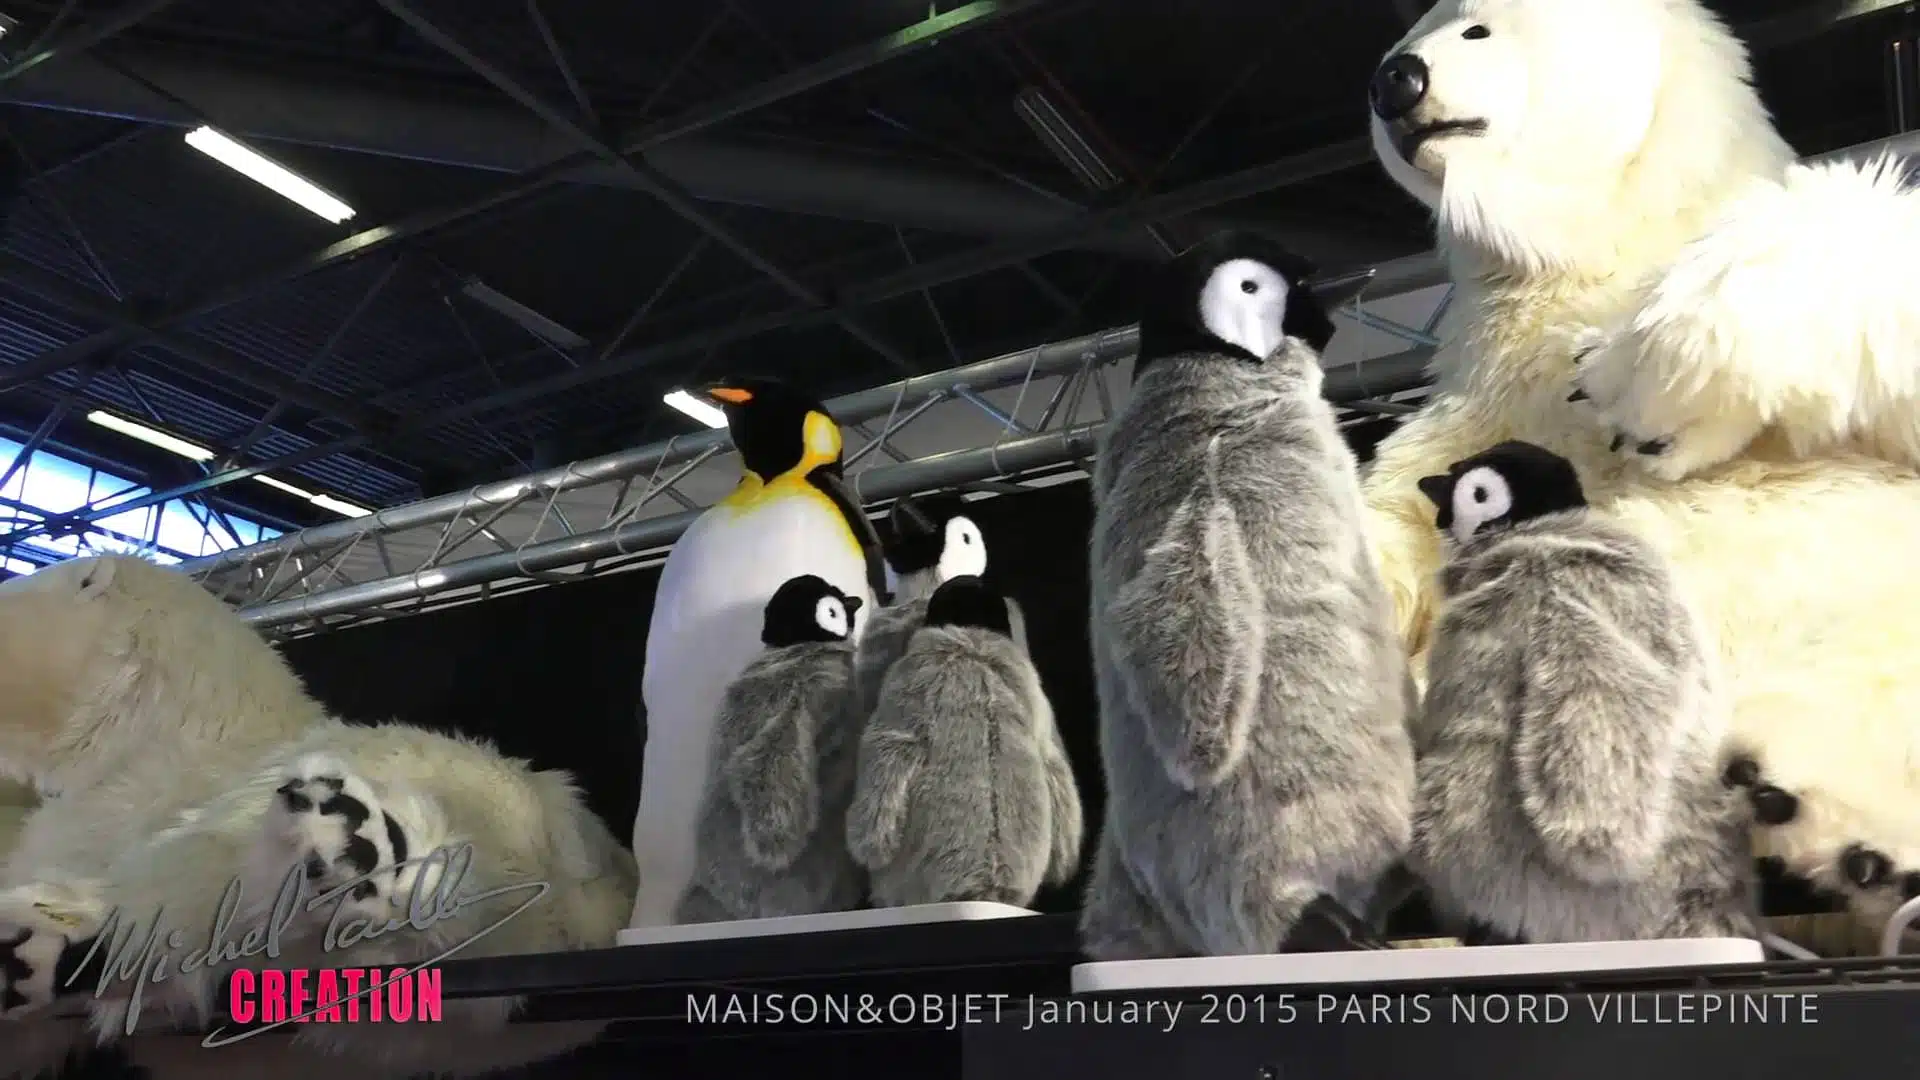 MICHEL TAILLIS CREATION  MAISON&OBJET January 2015 PARIS